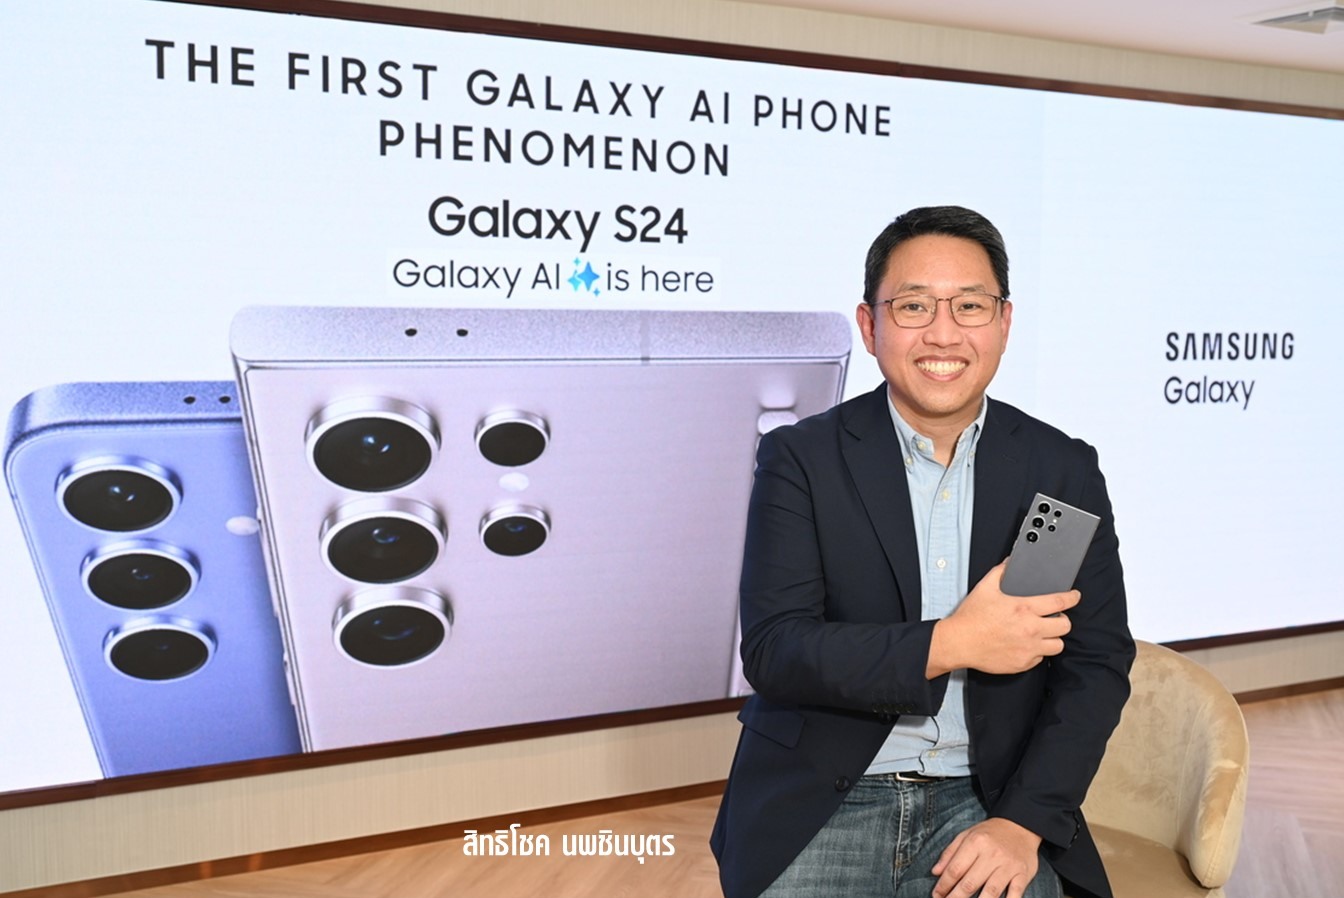 ซัมซุง ผู้นำสู่ยุค AI Phone ด้วย Galaxy AIยอดพรีออเดอร์ในไทยอันดับ 1